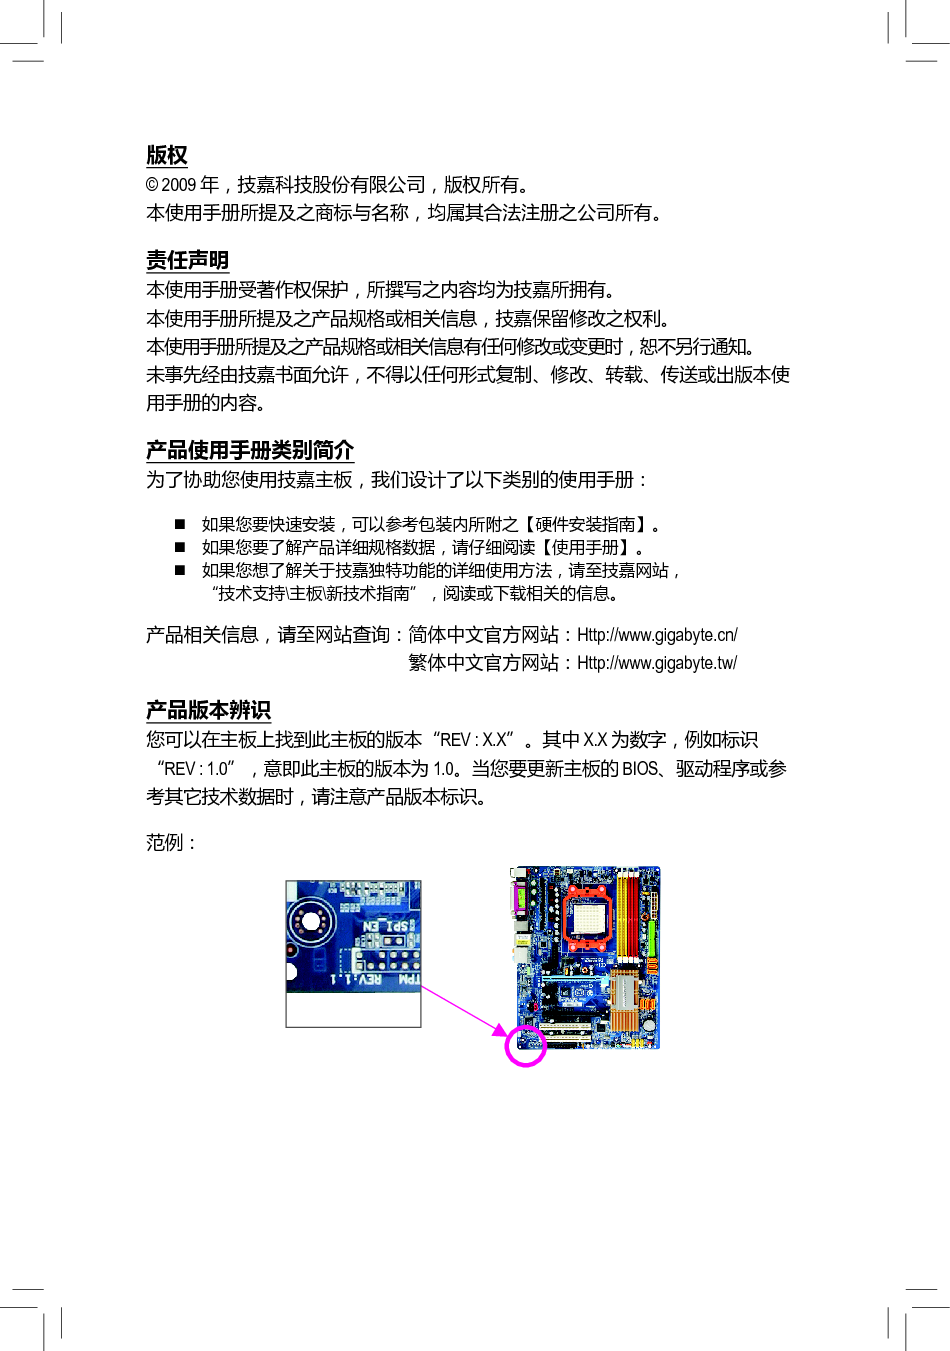 技嘉 Gigabyte GA-M720-US3 使用手册 第2页